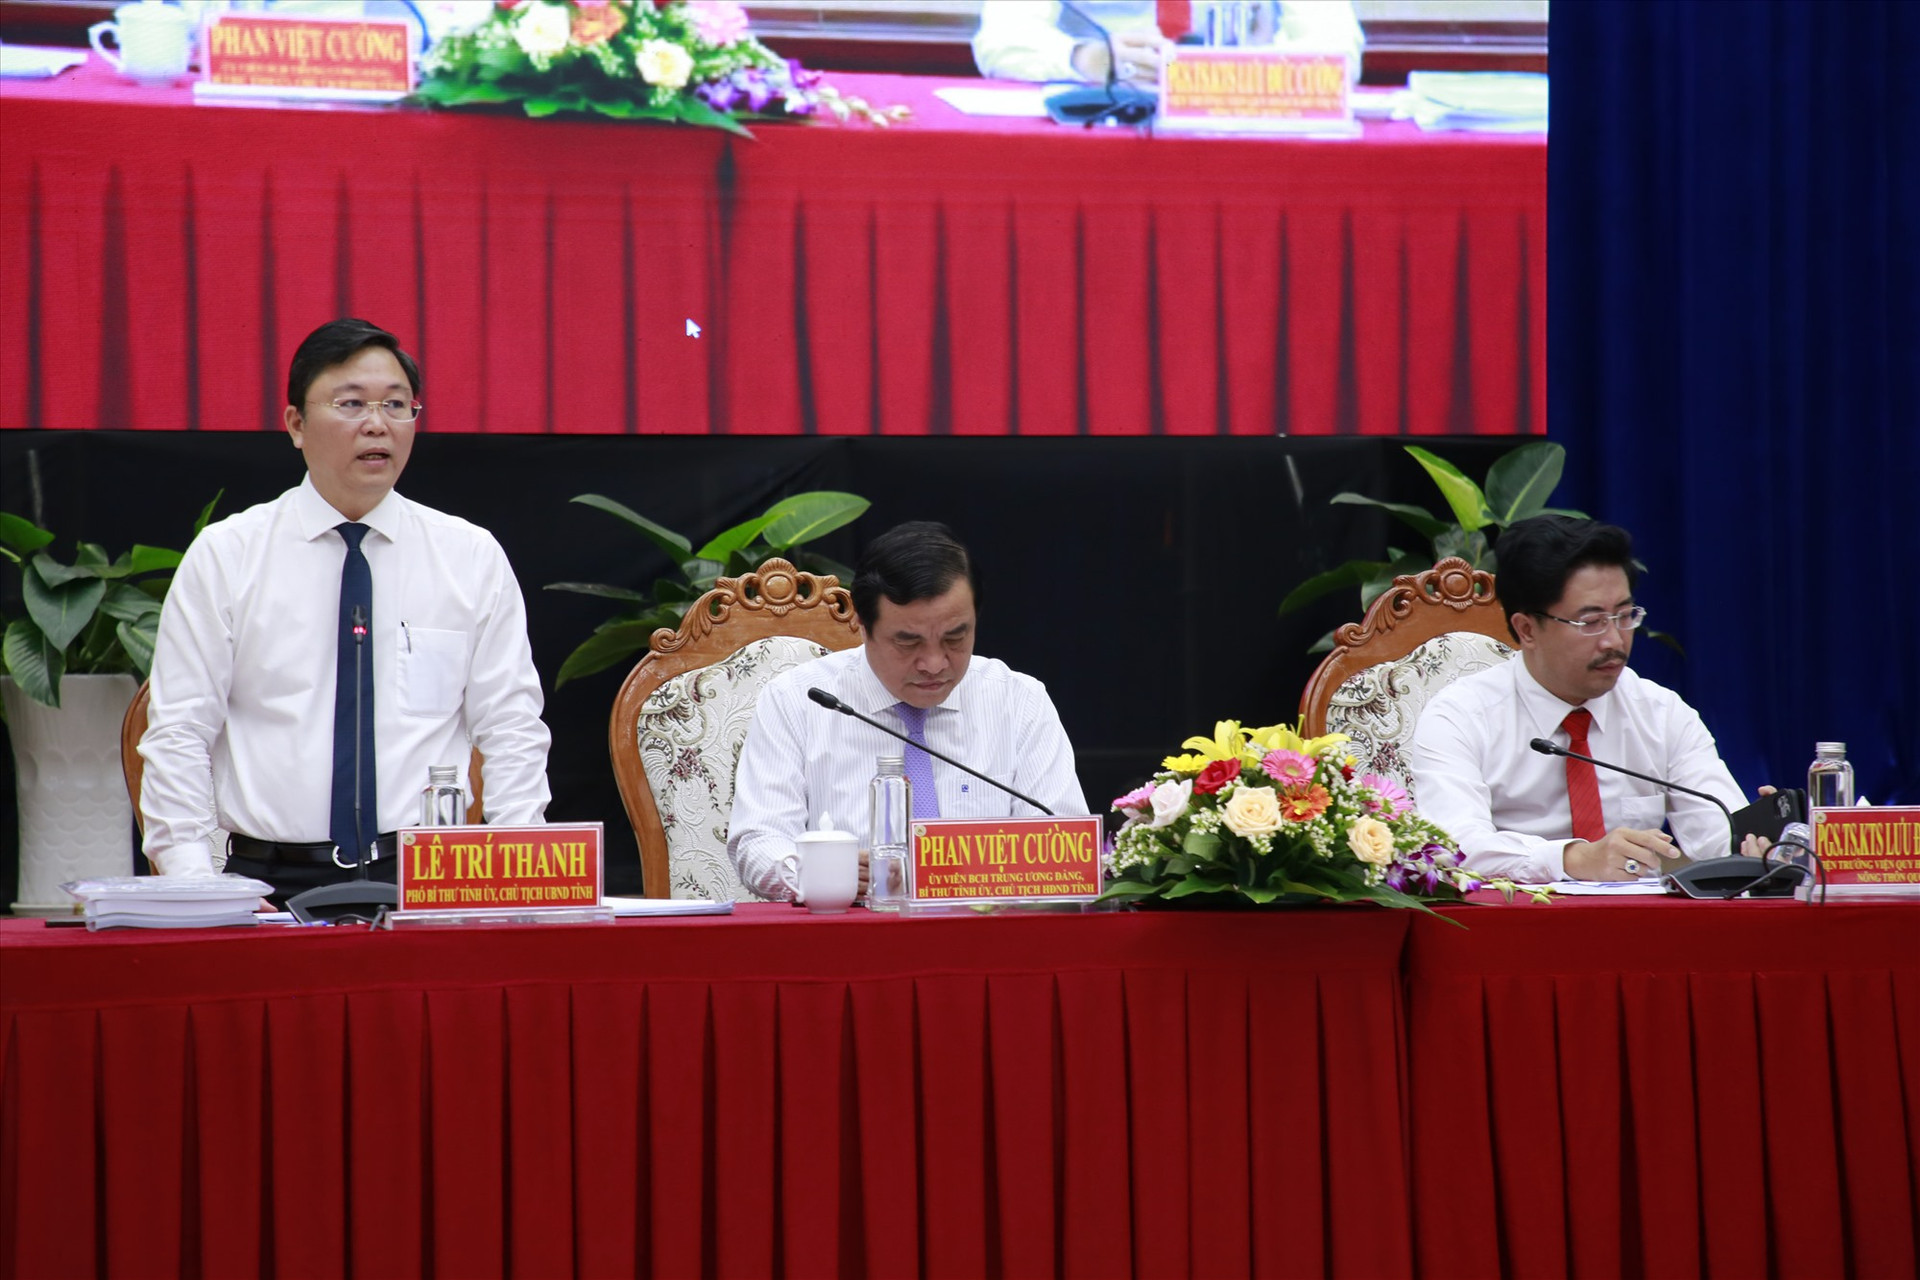 Chủ tịch UBND tỉnh Lê Trí Thanh yêu cầu liên danh tư vấn tiếp thu tối đa các ý kiến đóng góp tại hội thảo để hoàn thiện đồ án quy hoạch.  Ảnh: C.T